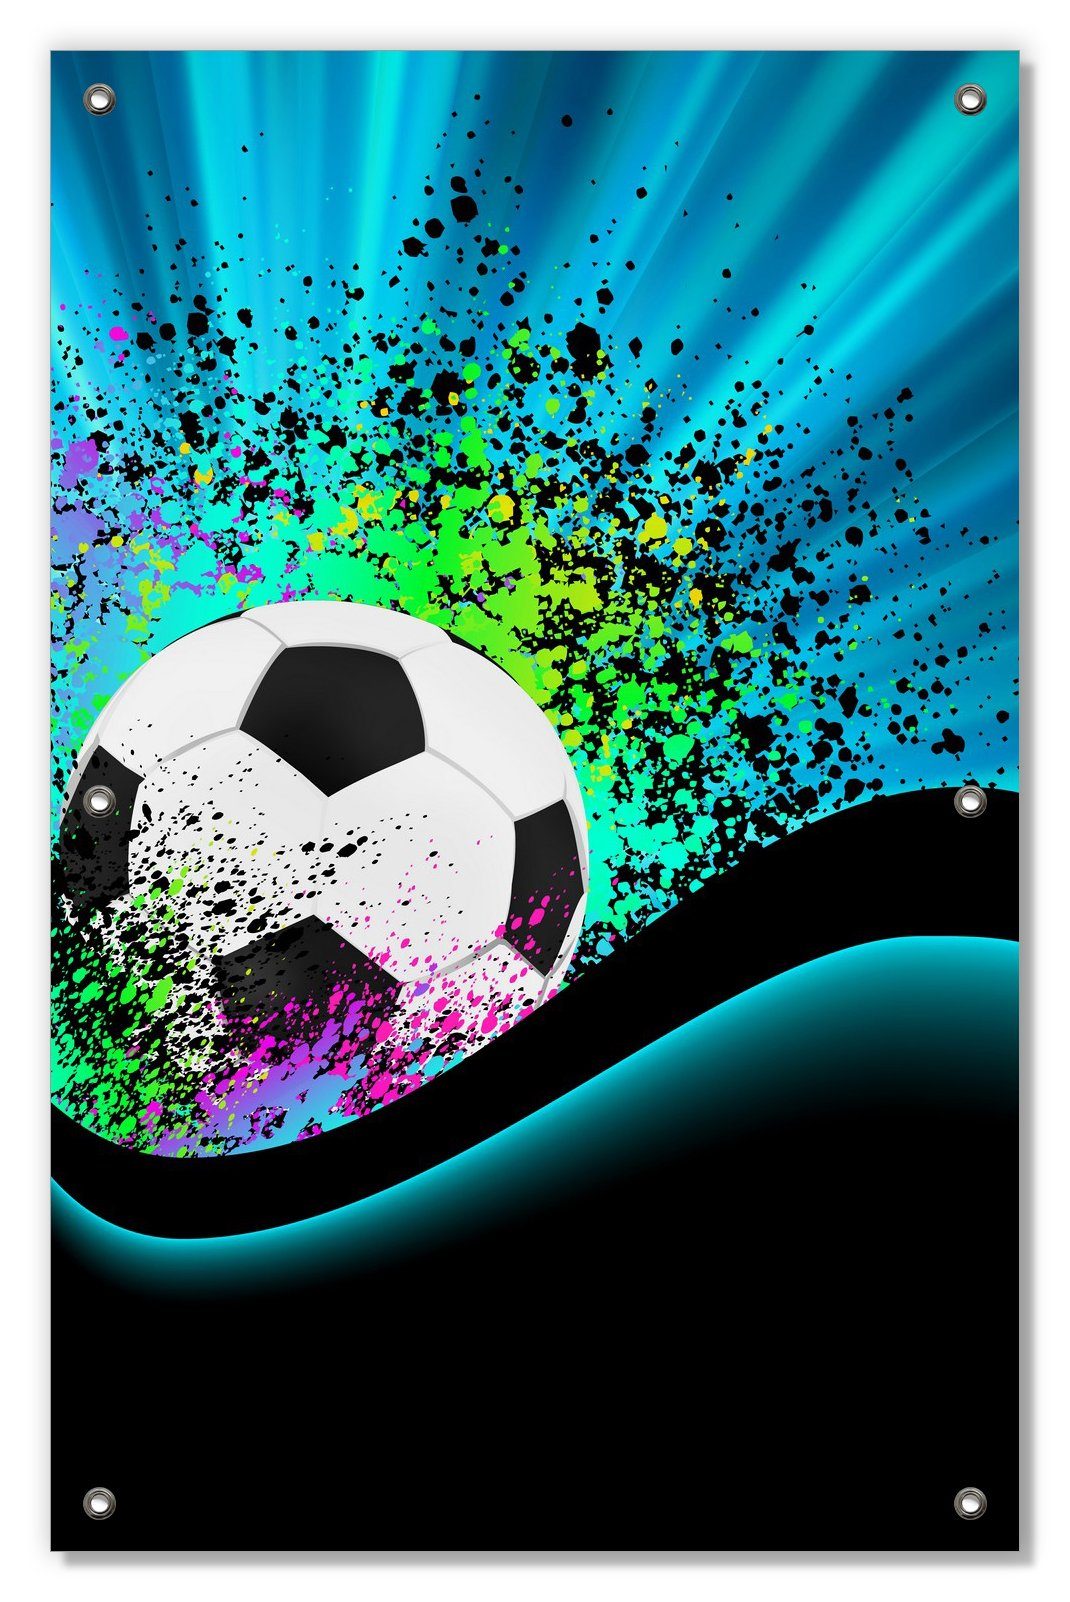 Sonnenschutz Fußball - Design Wellen und Regenbogen in blau, Wallario, blickdicht, mit Saugnäpfen, wiederablösbar und wiederverwendbar